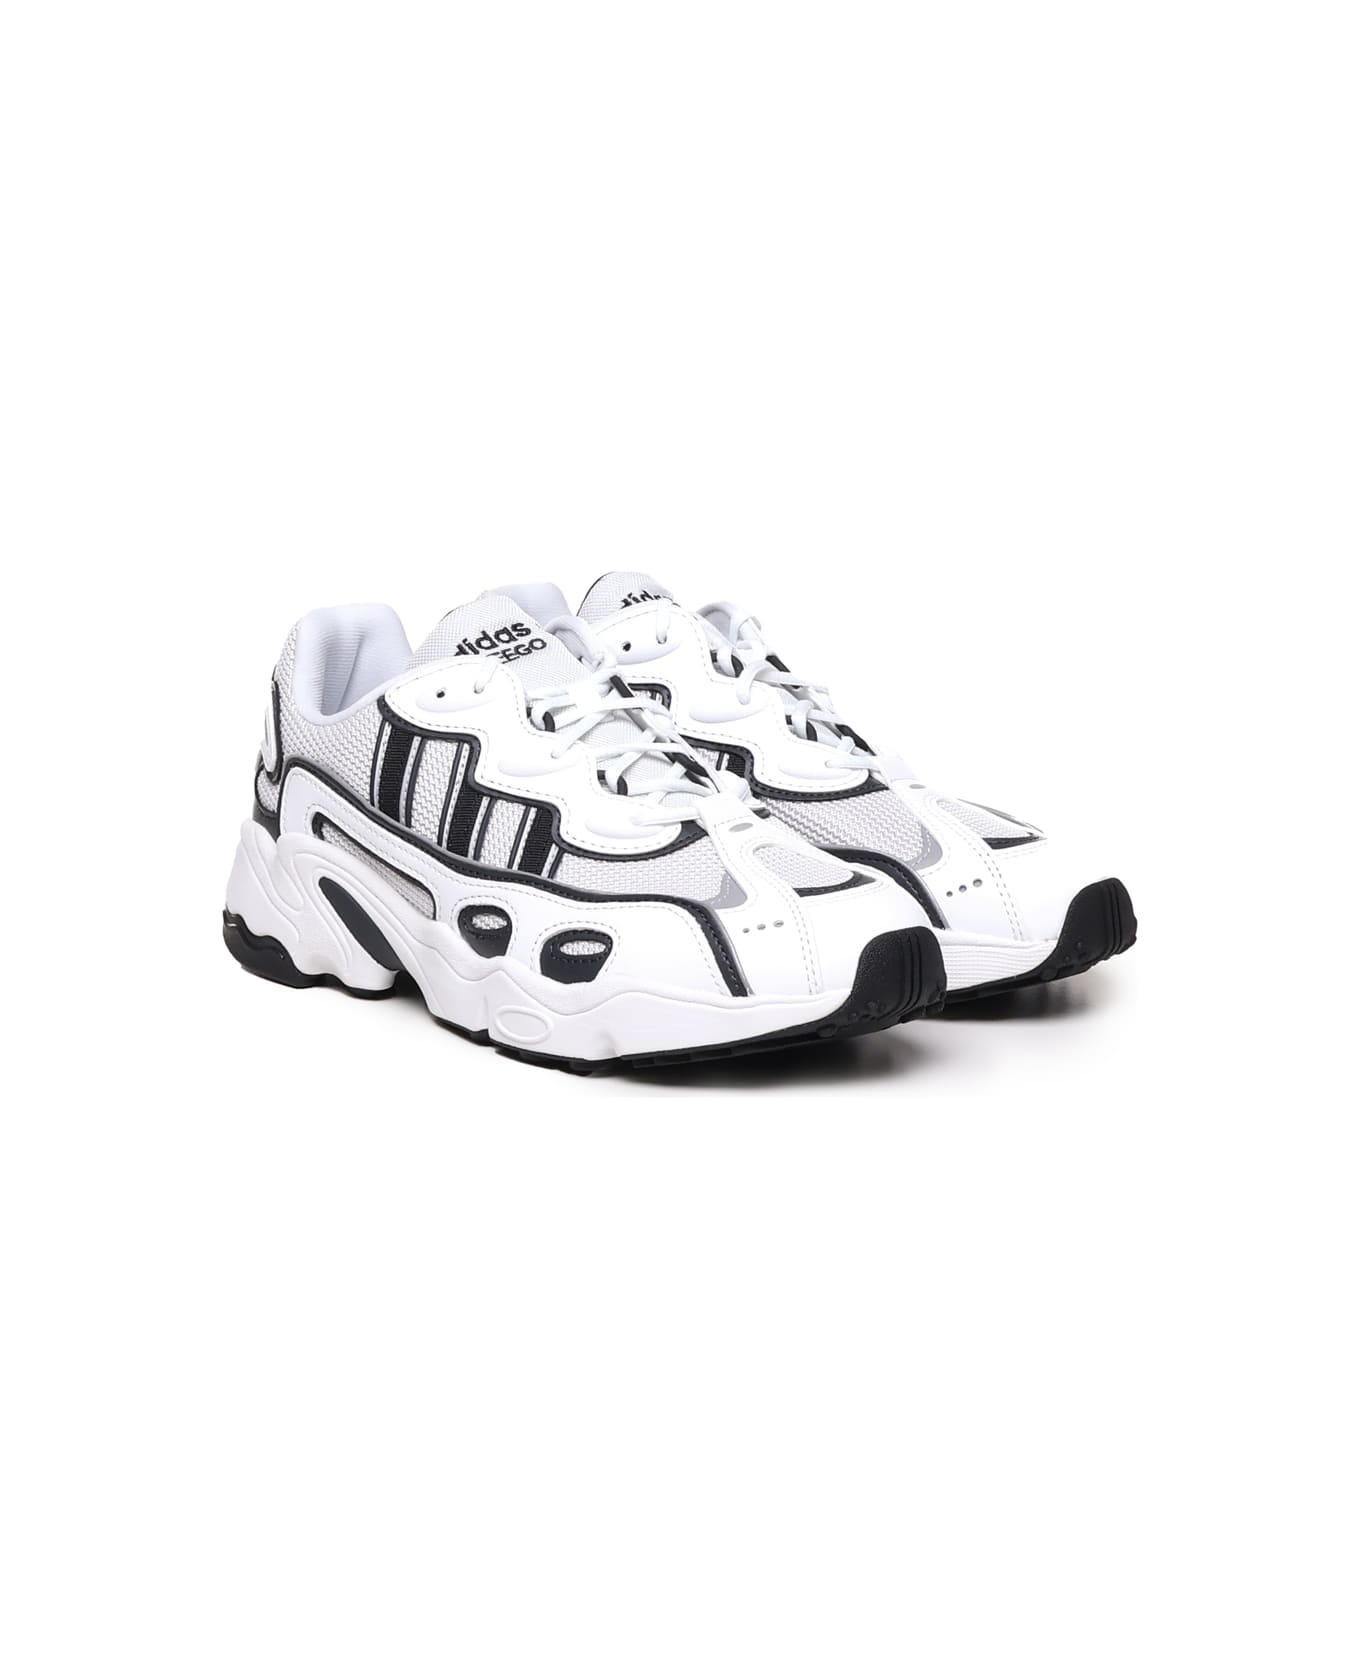 Adidas Originals Ozweego Og Shoes - White, black スニーカー